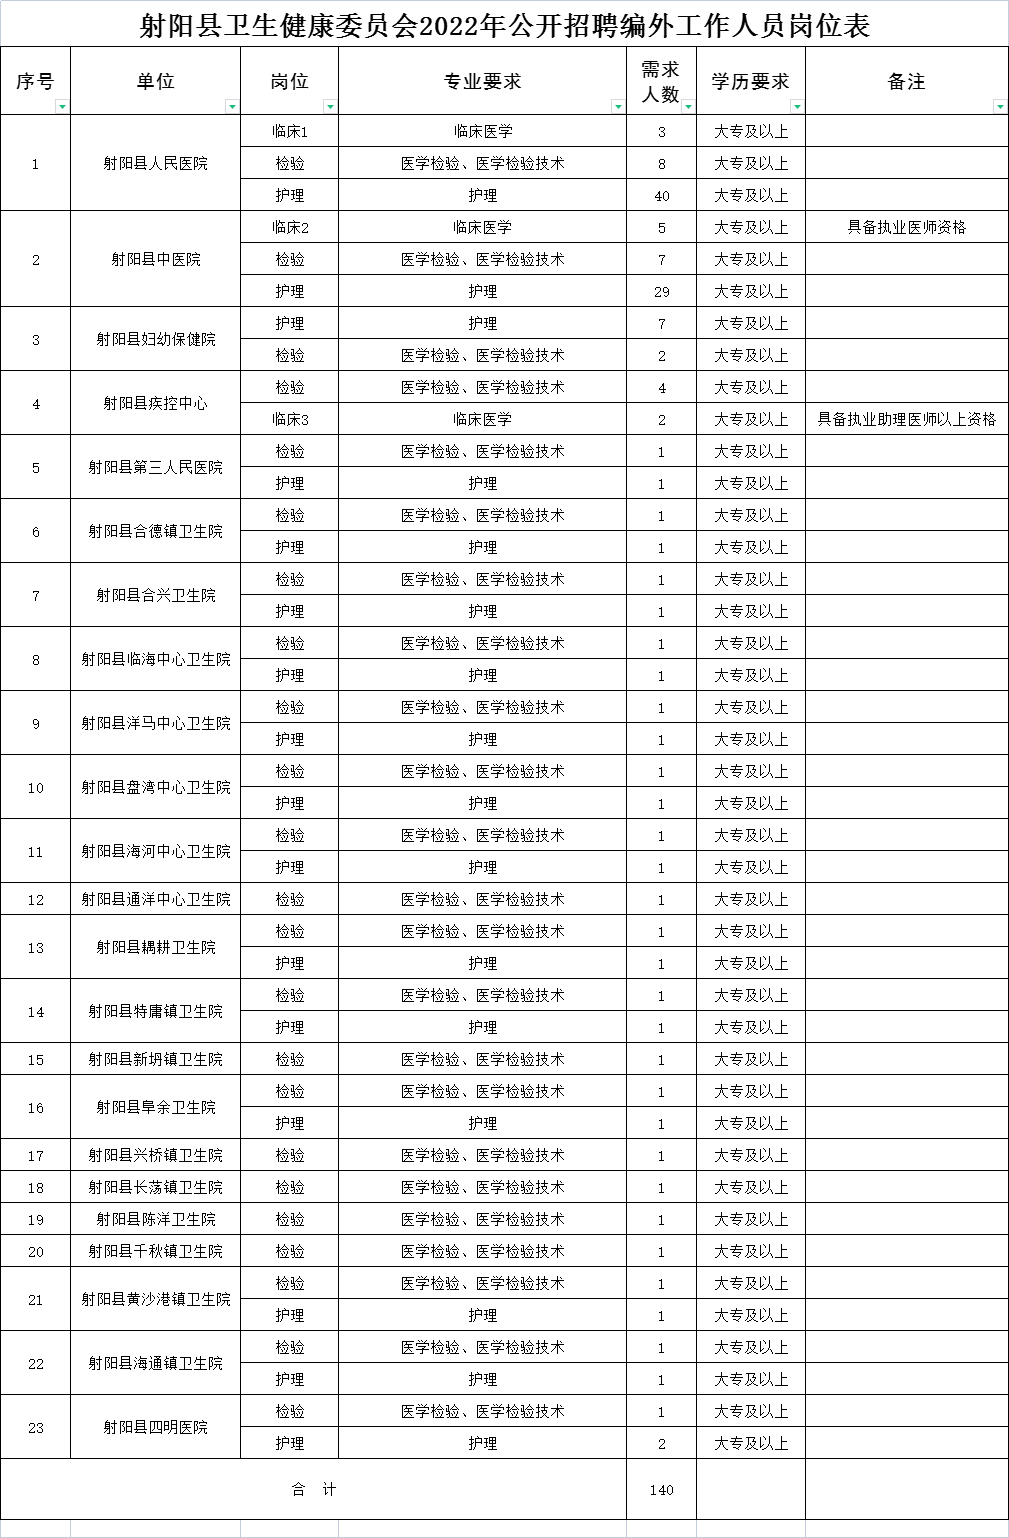 射阳县卫生健康委员会2022年公开招聘编外工作人员岗位表